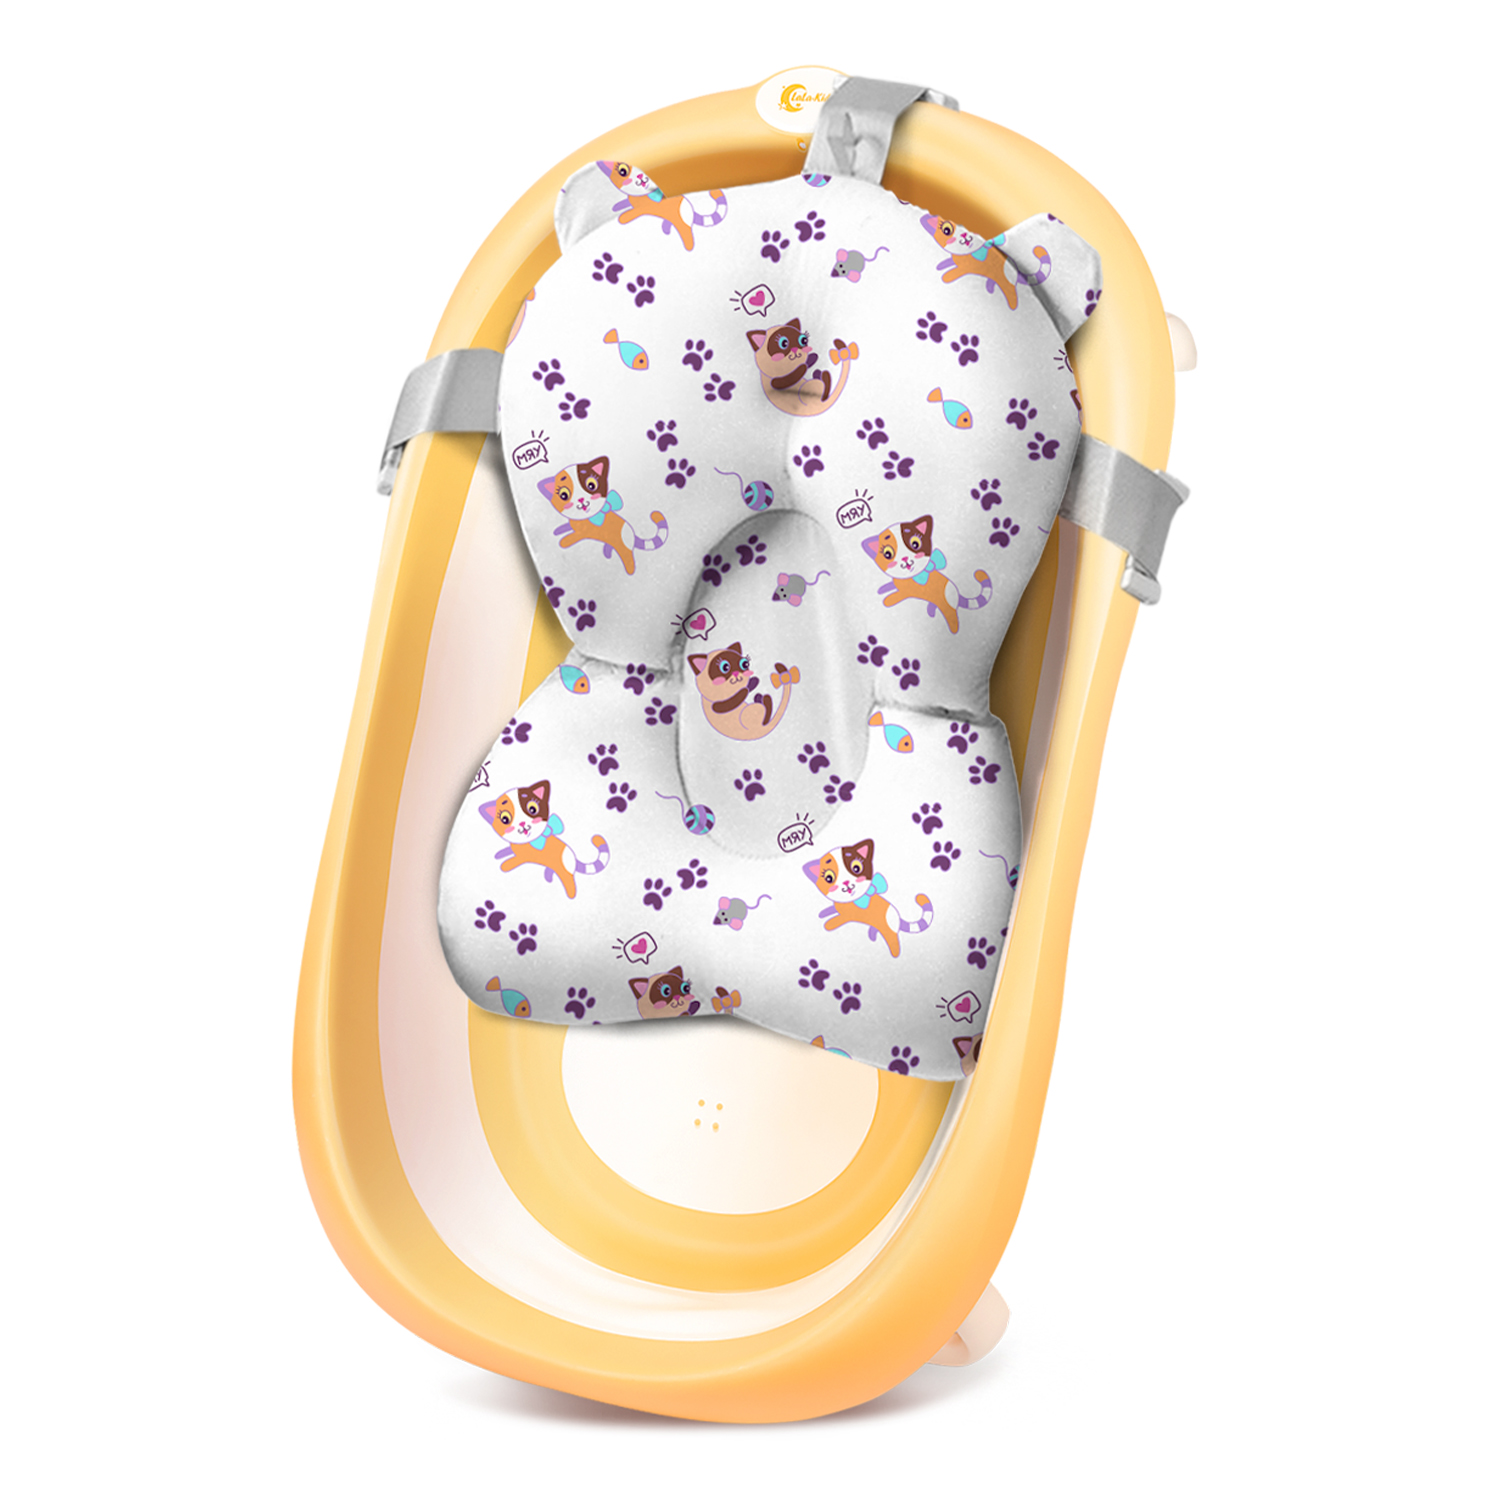 Ванночка для новорожденных LaLa-Kids складная с матрасиком ярко-лиловым в комплекте - фото 1